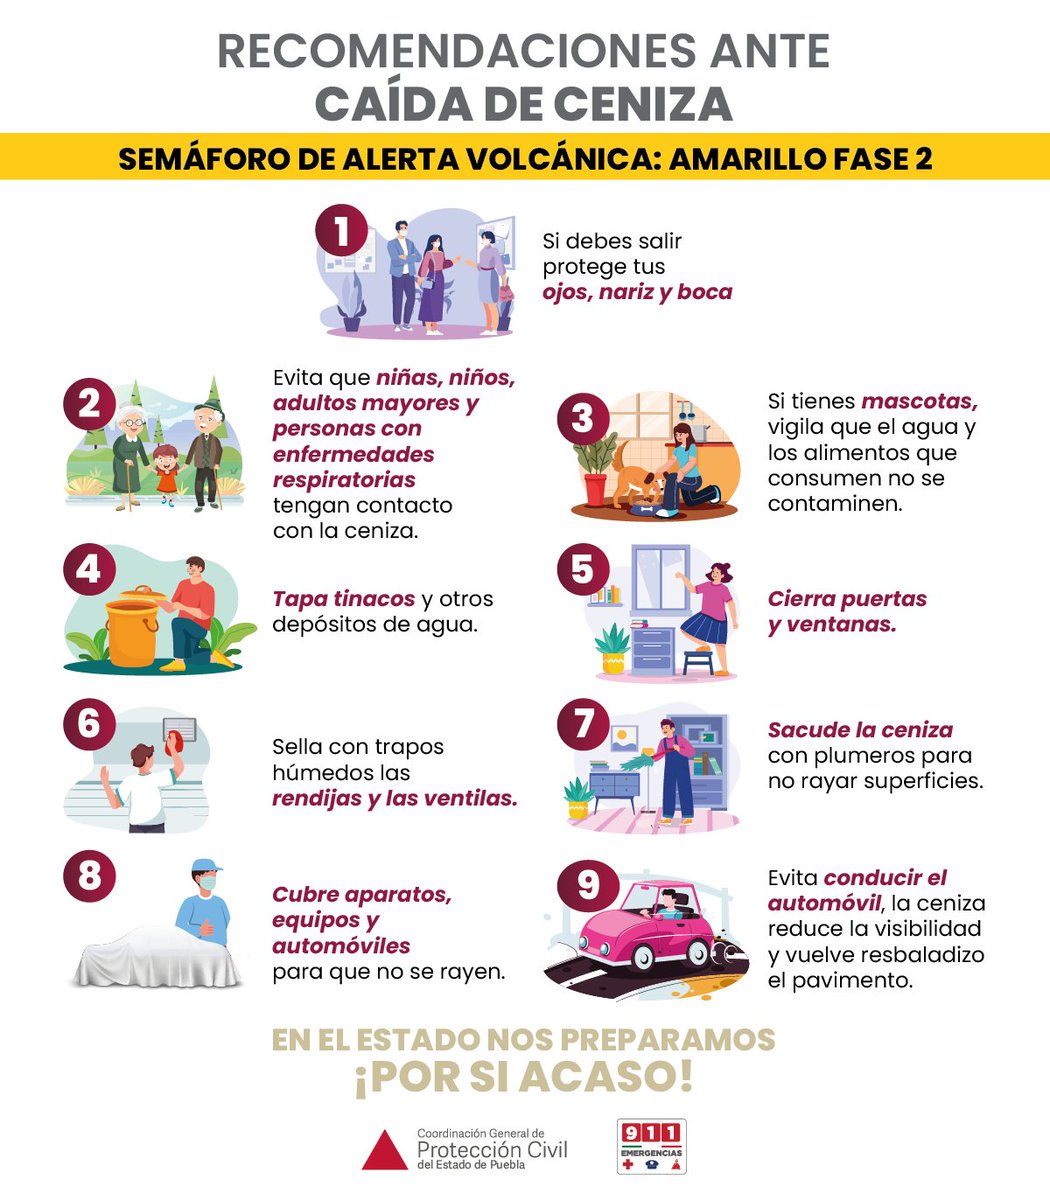 Ante la actividad del #Popocatépetl actúa con responsabilidad. Sigue las recomendaciones de @PC_Estatal: 1️⃣Utiliza cubrebocas 2️⃣Barre y deposita la ceniza en bolsas 3️⃣Resguarda a animales de granja y de compañía